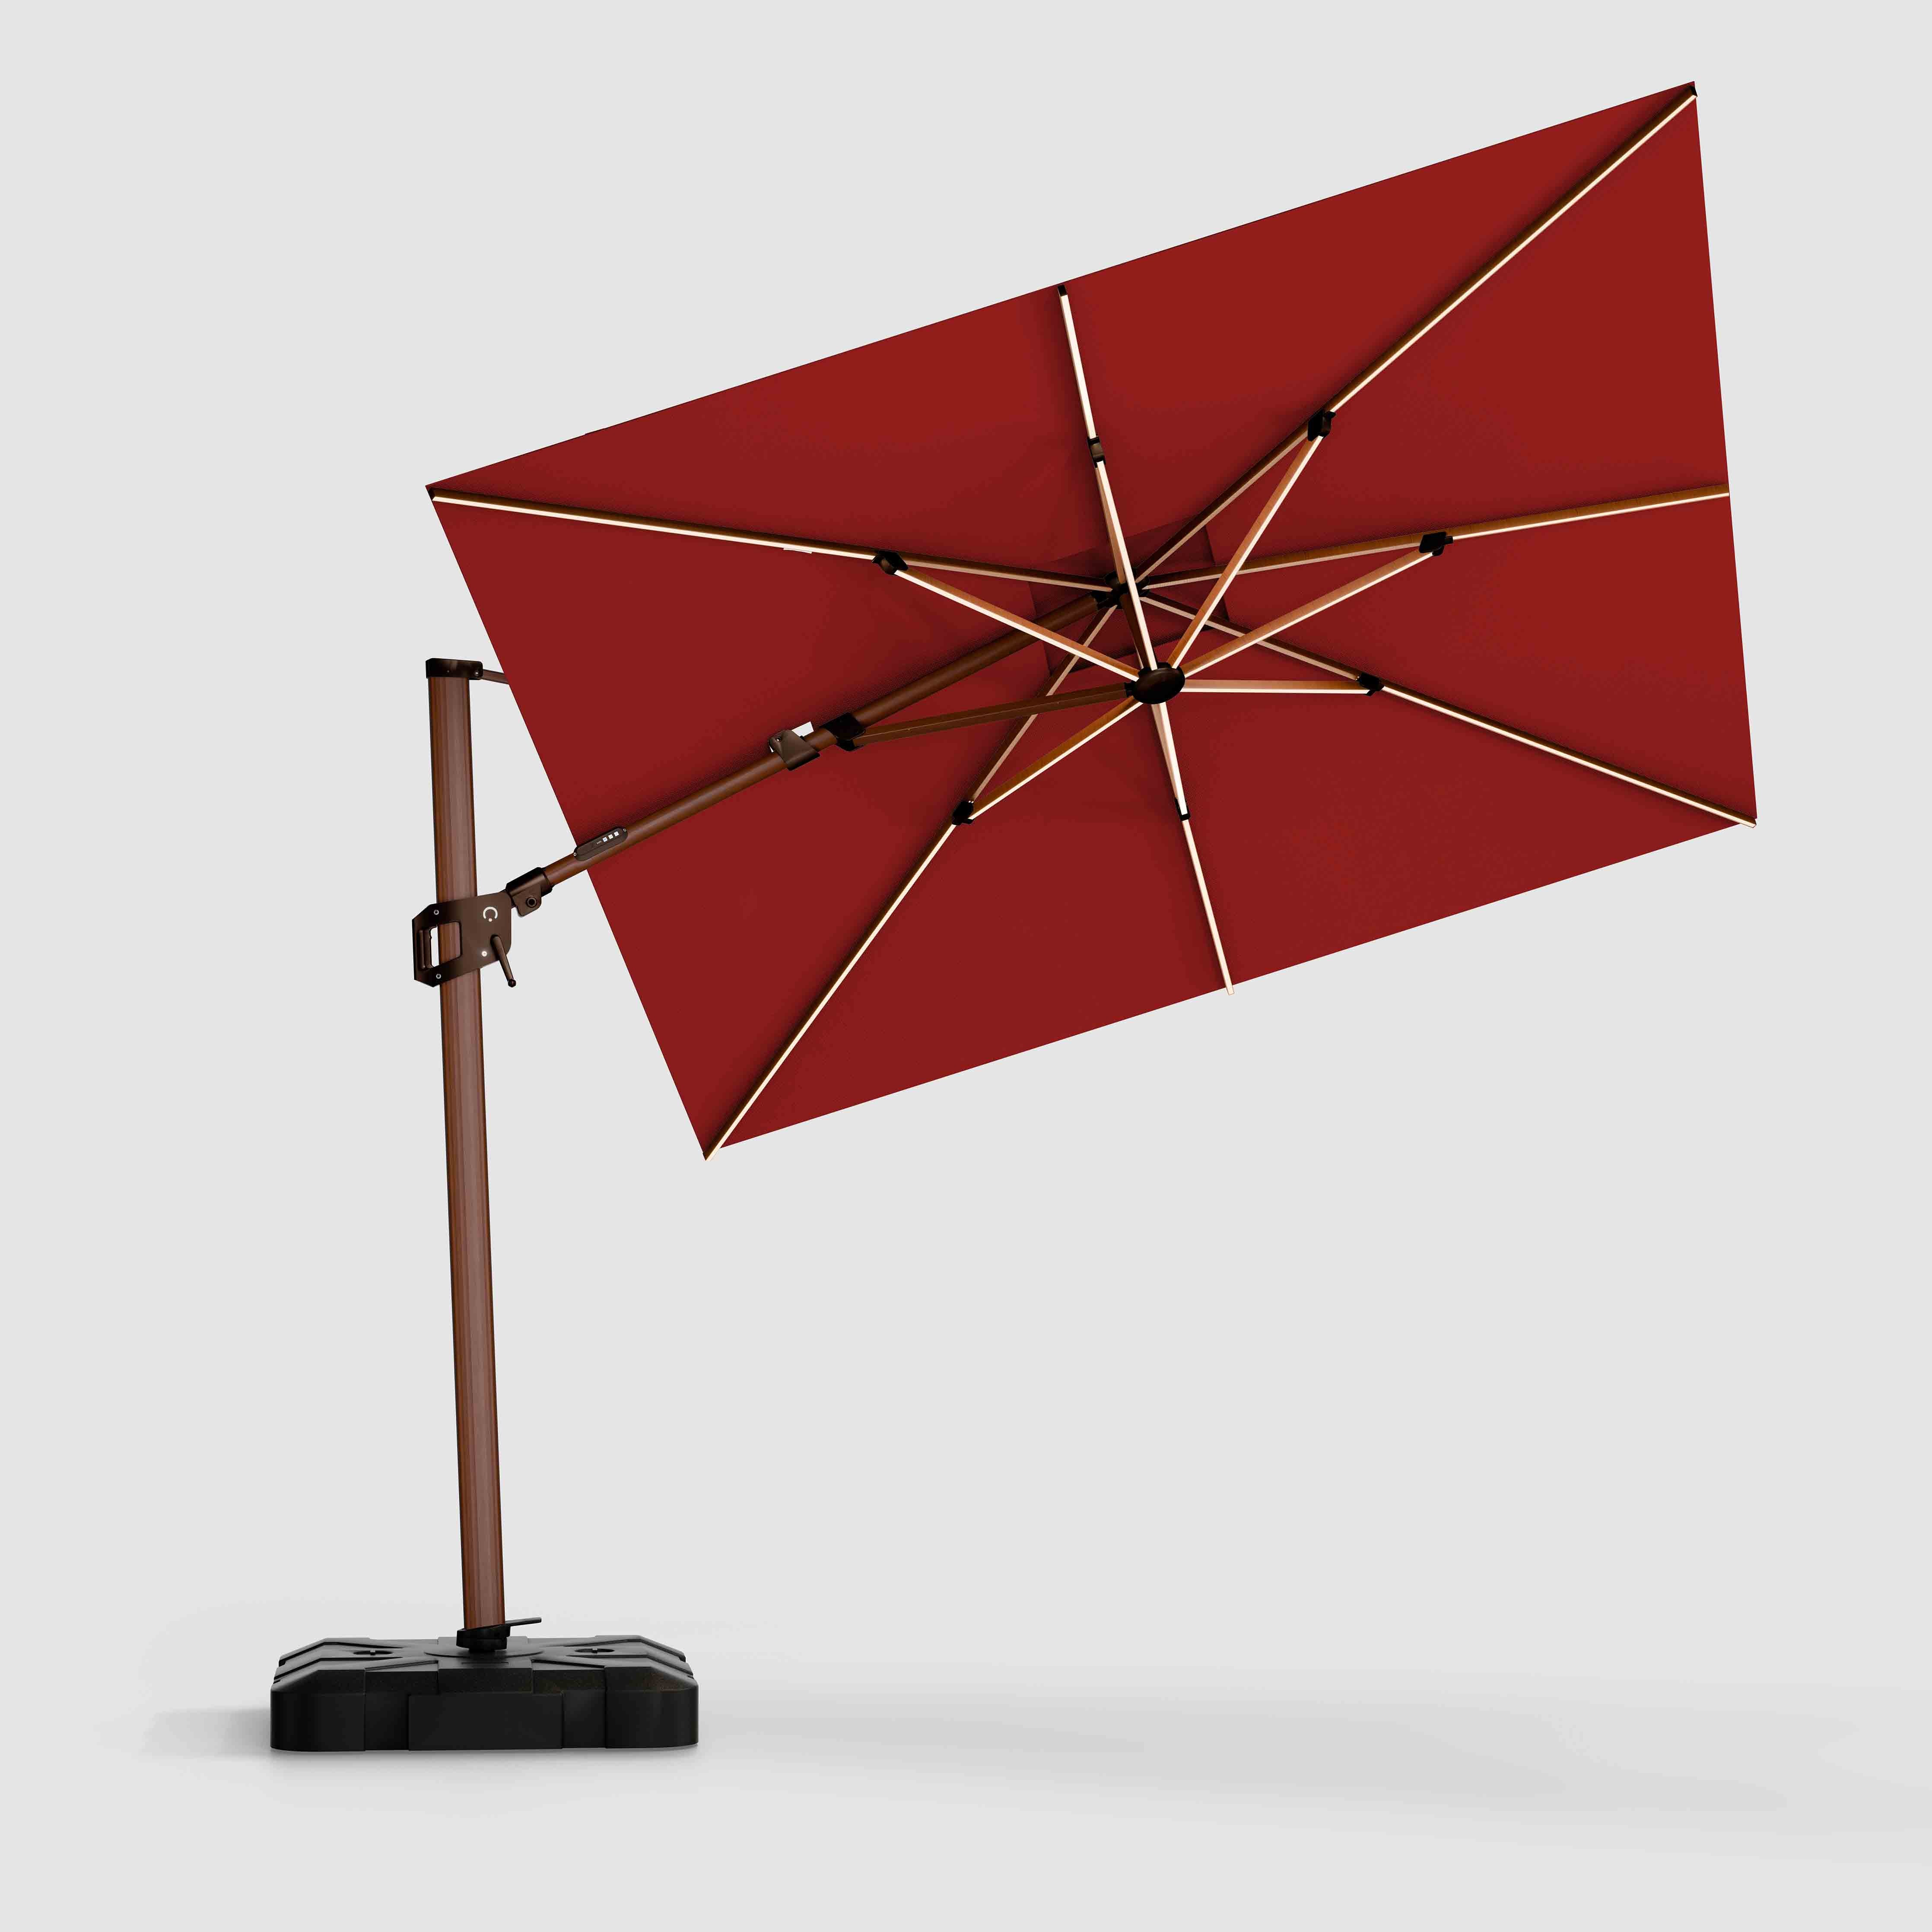 The Supreme Wooden™ - Sunbrella Red